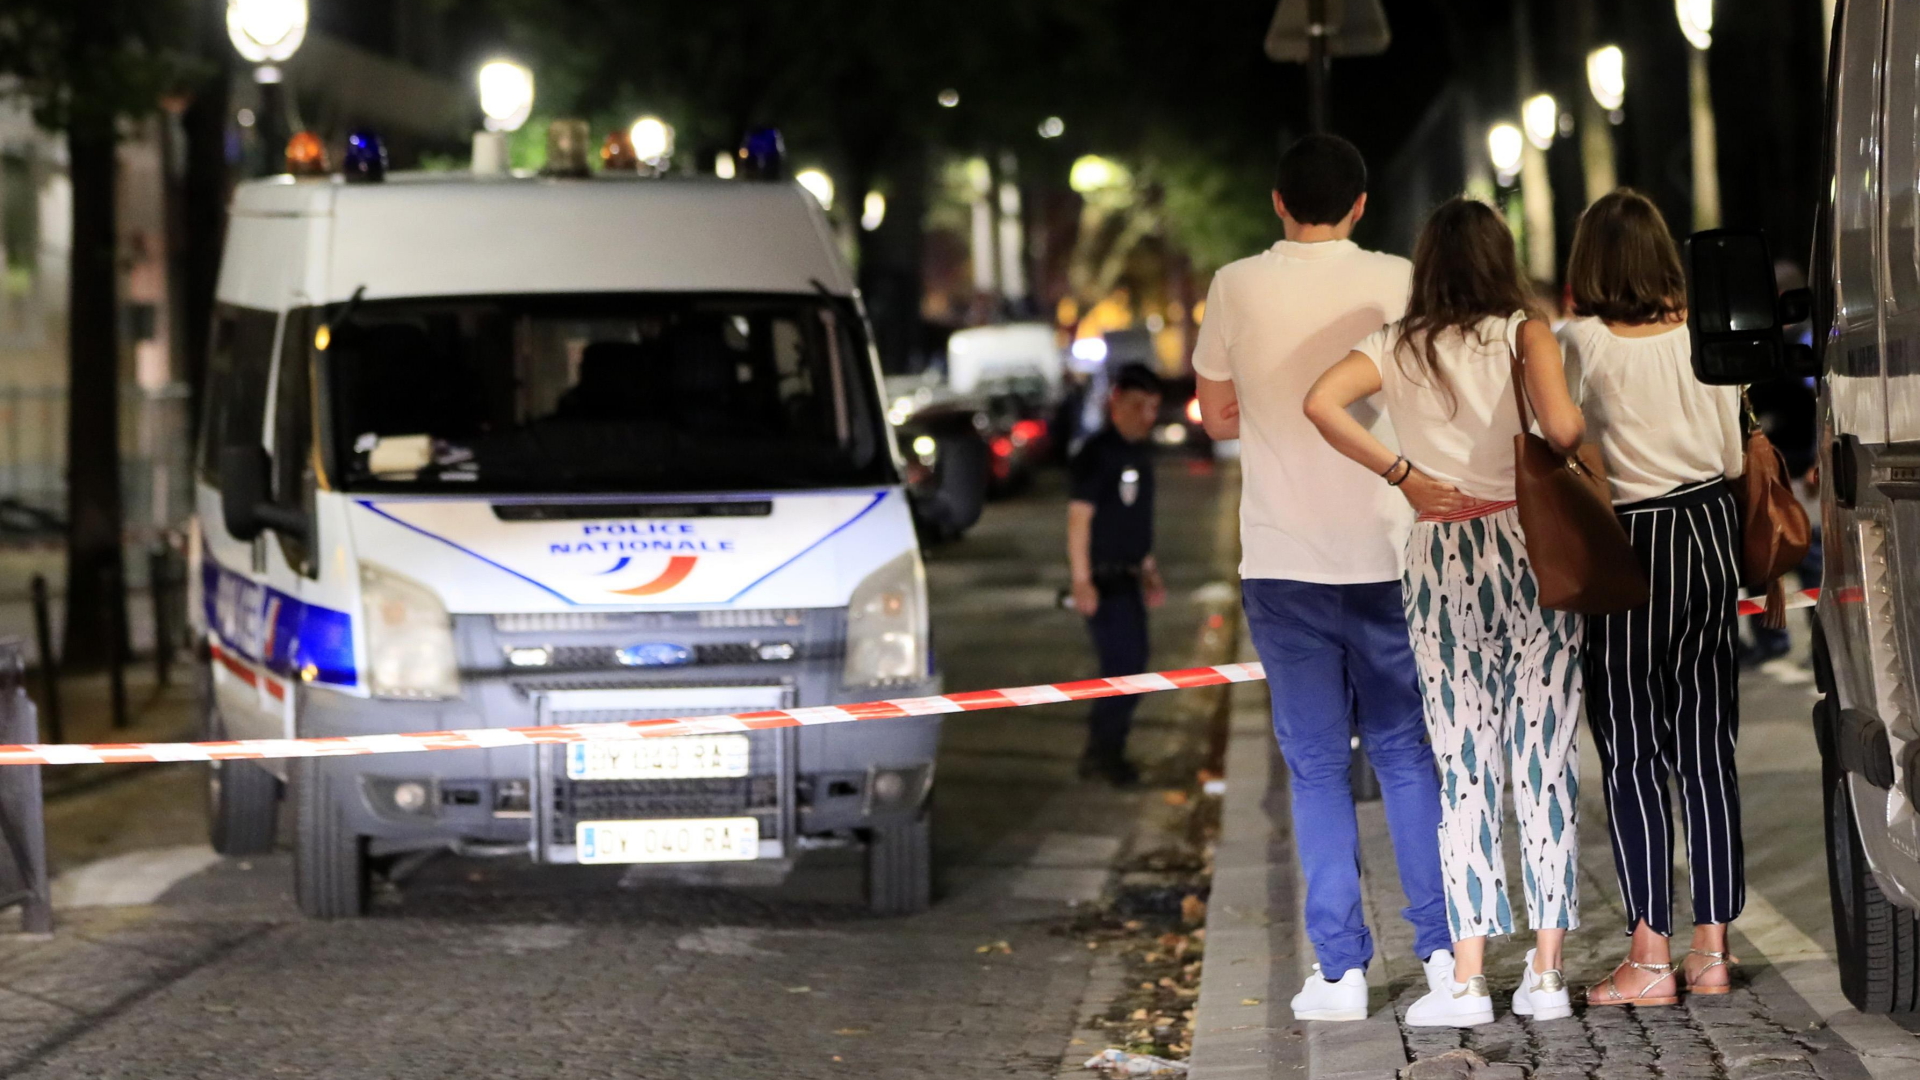 Tatort der Messerattacke in Paris | Bildquelle: REUTERS